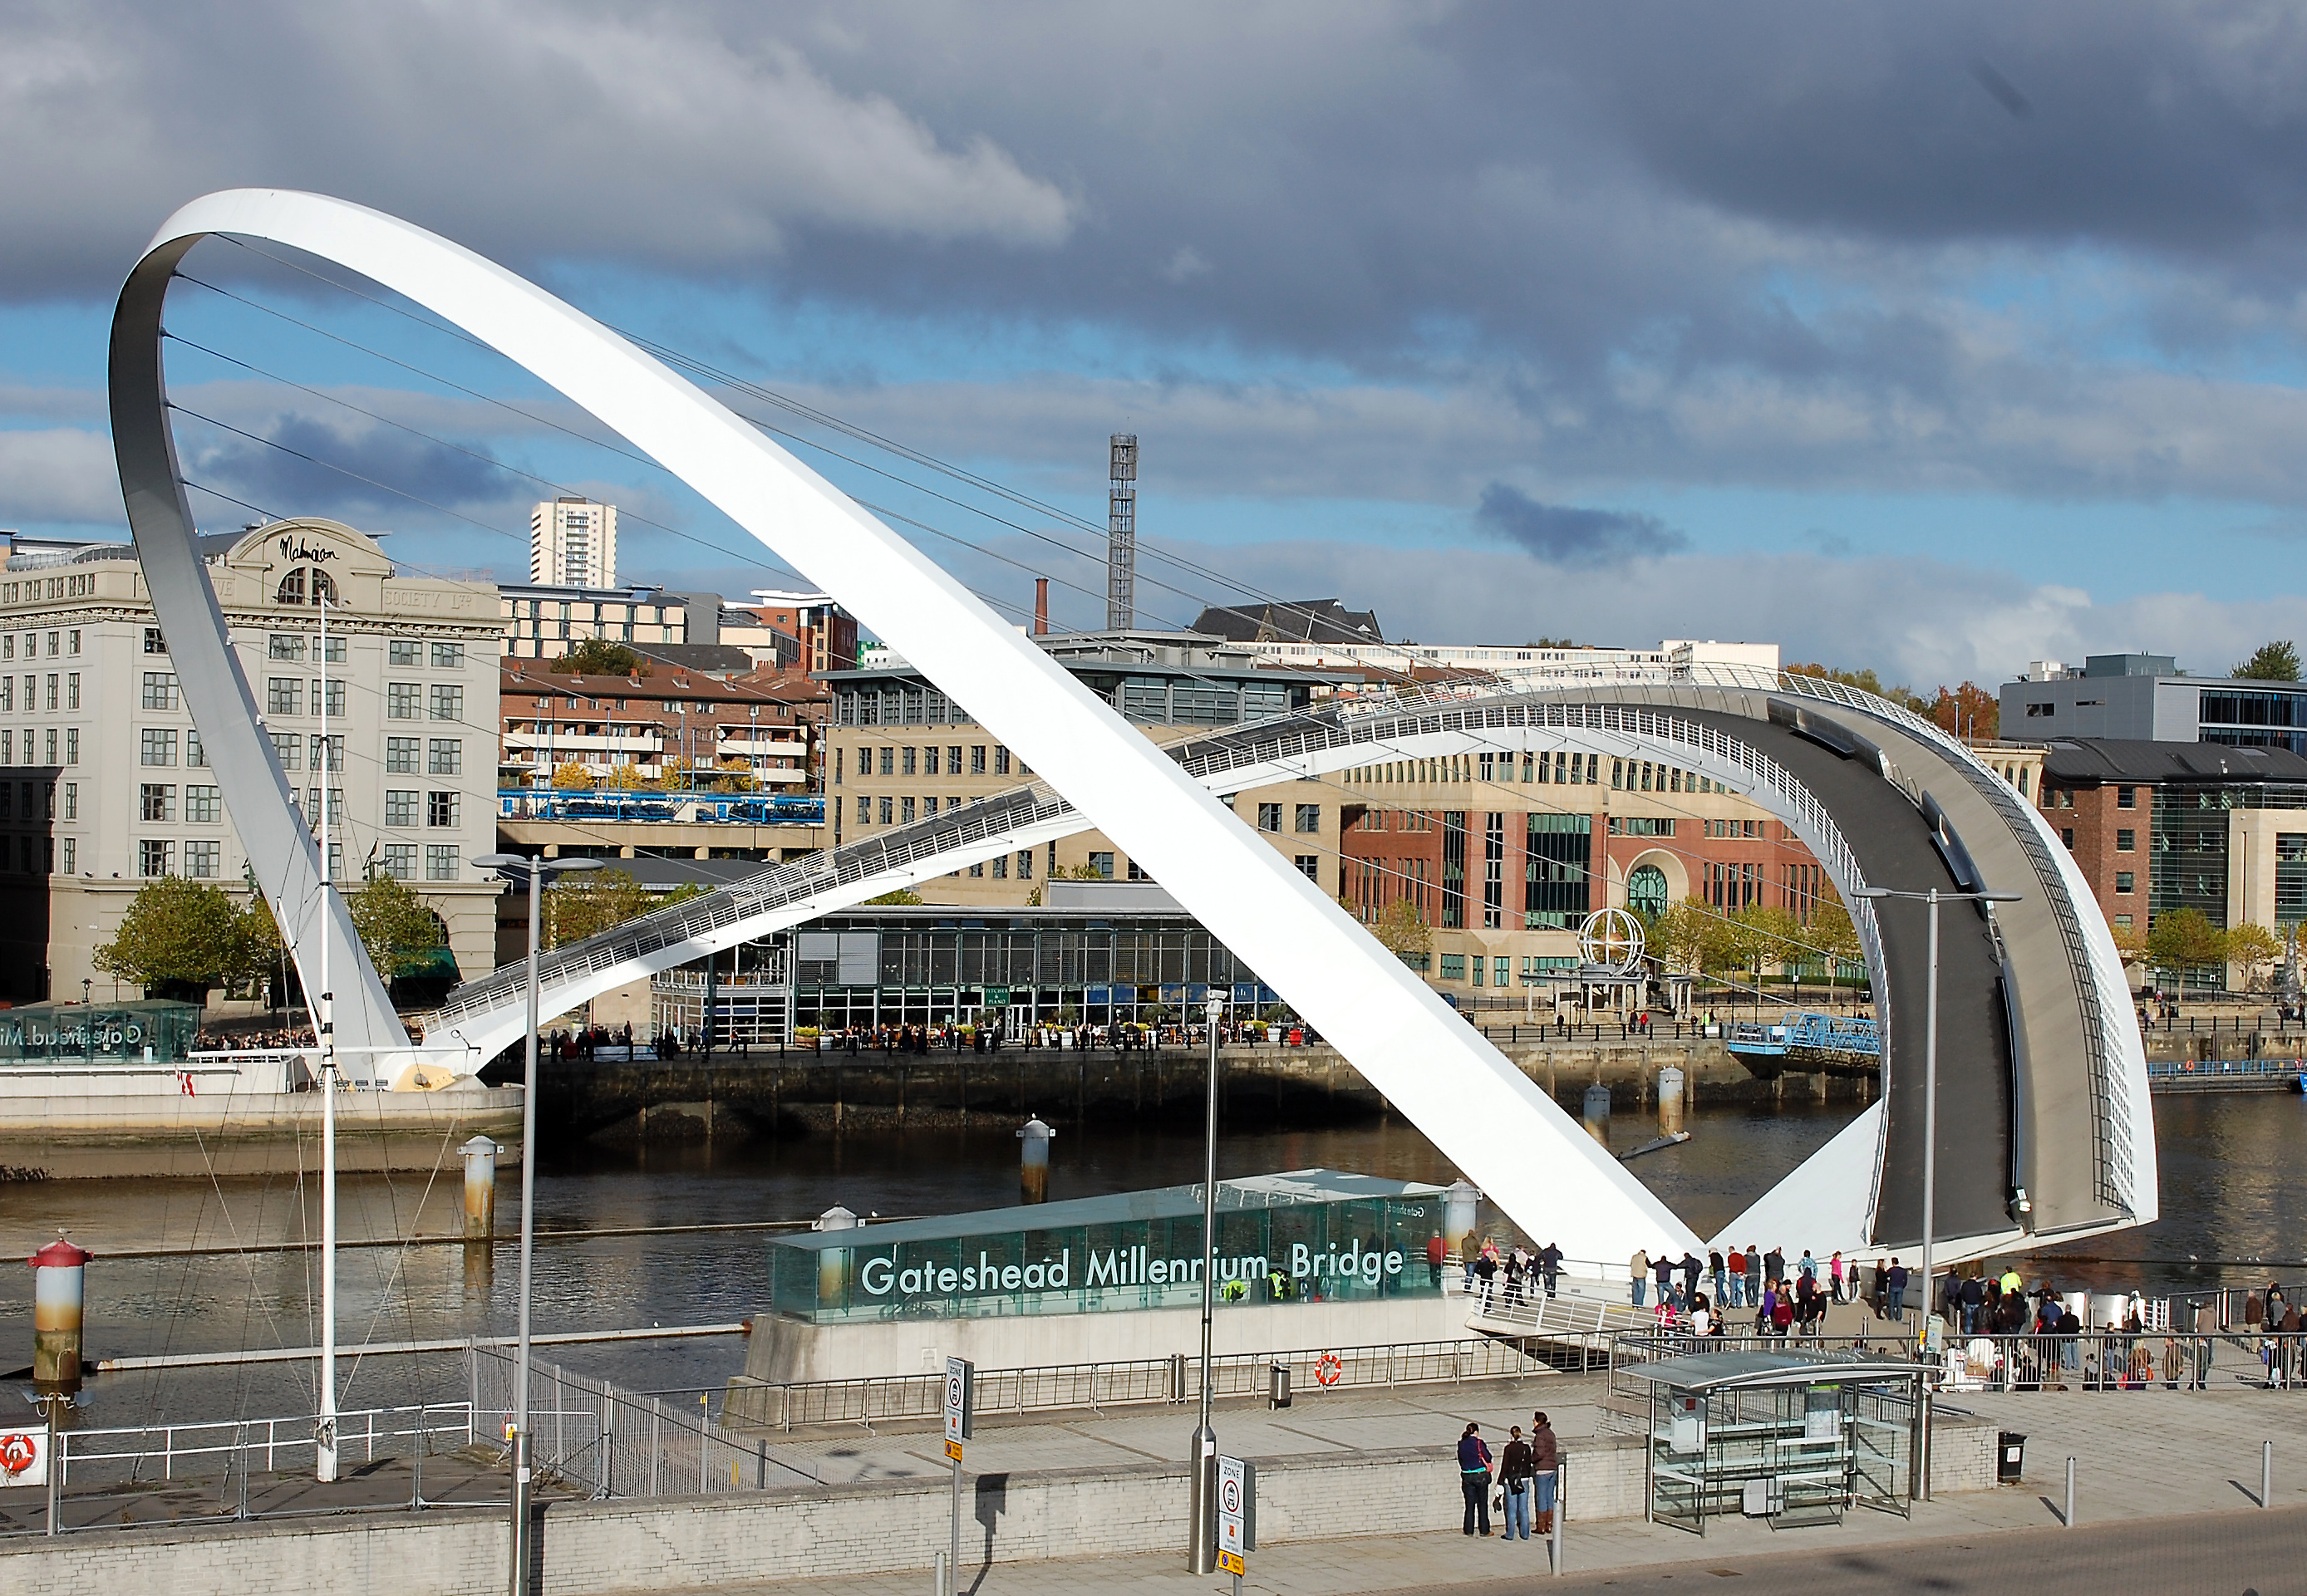 Gateshead Millennium Bridge Design and Pictures - InspirationSeek.com